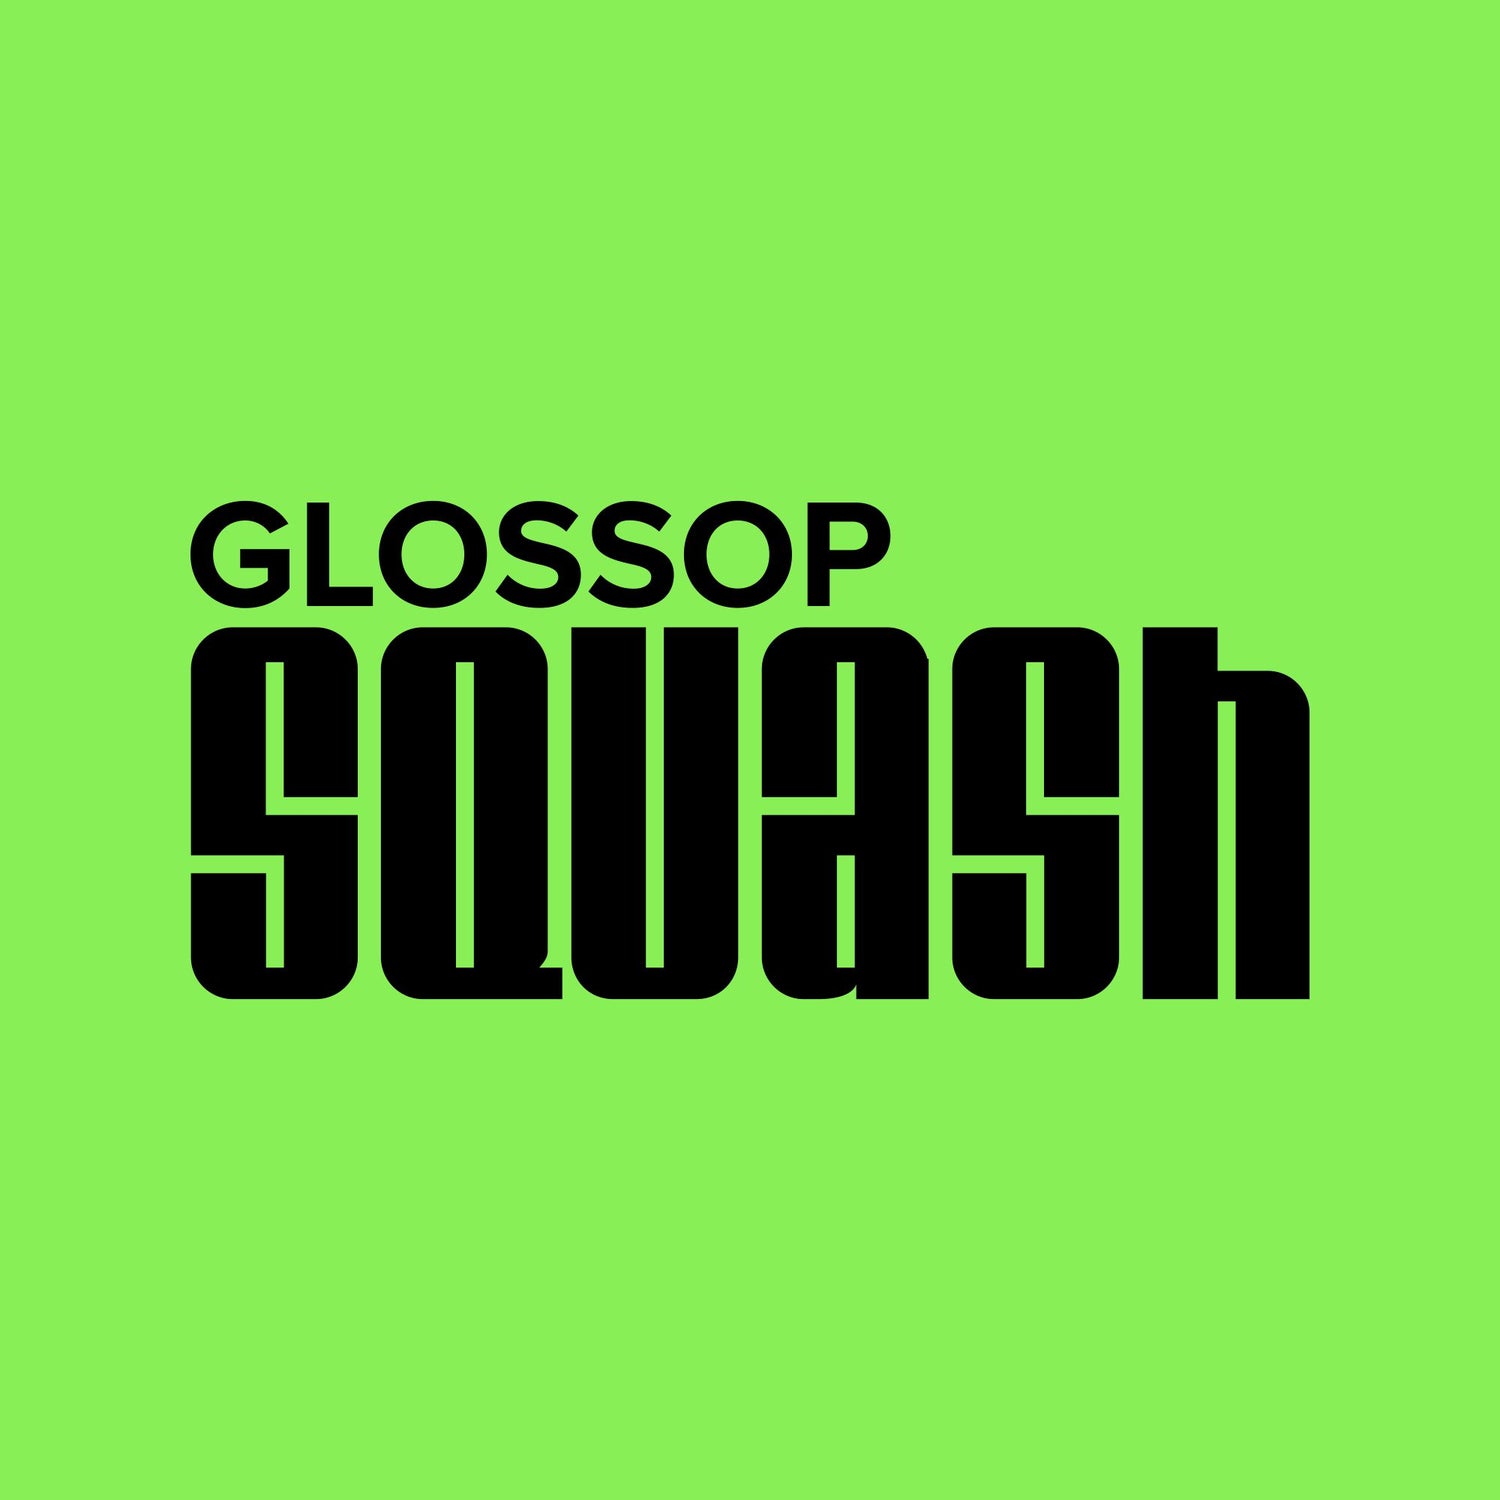 Glossop Squash